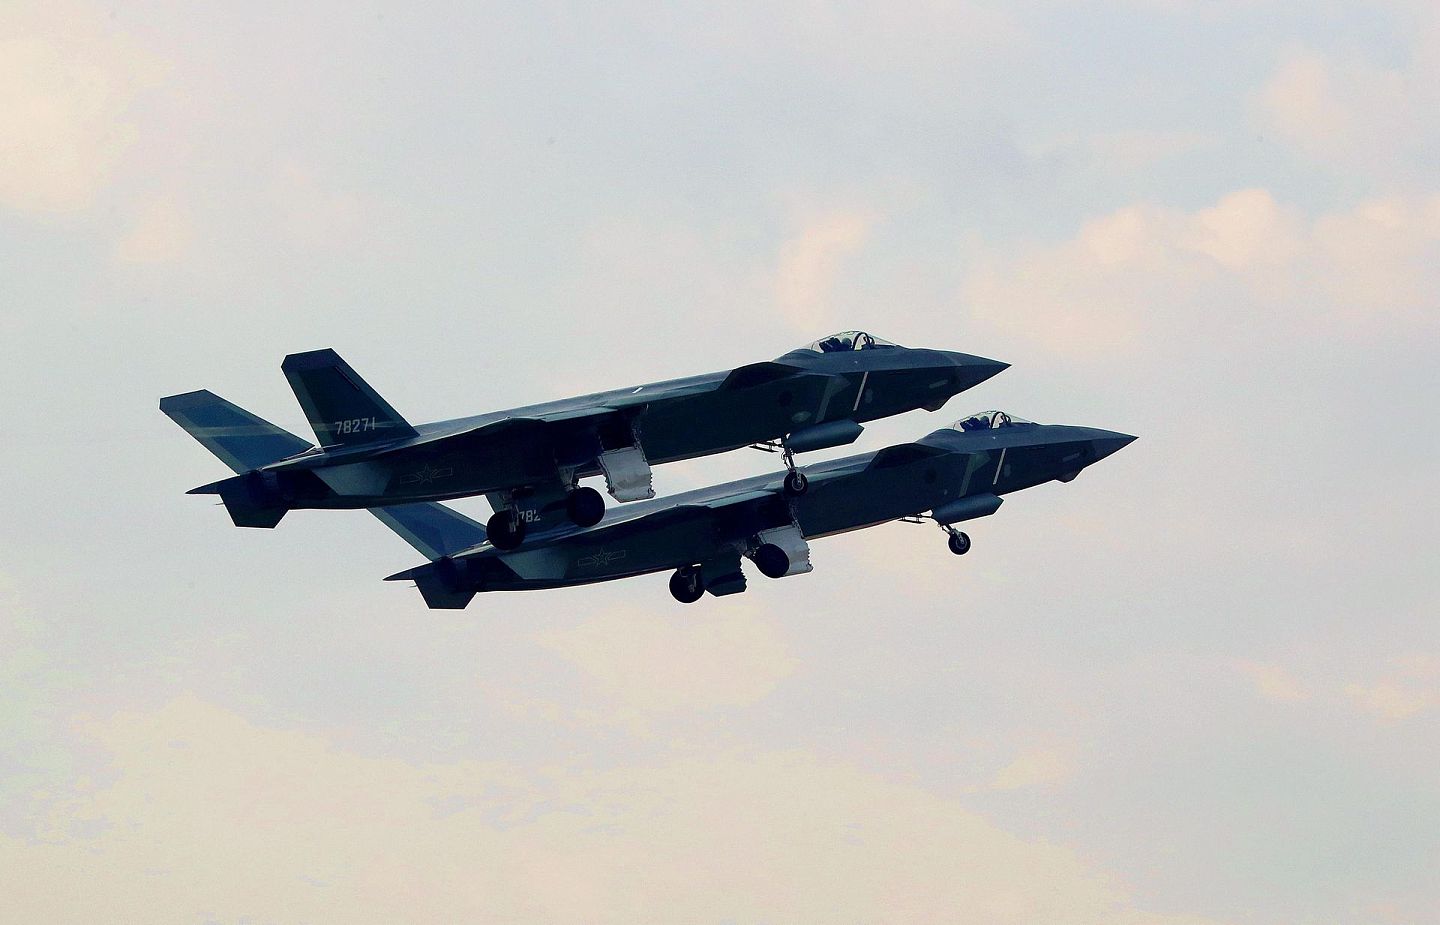 中国空军装备的歼-20战机能够在西太平洋上空争夺制空权。（新华社）